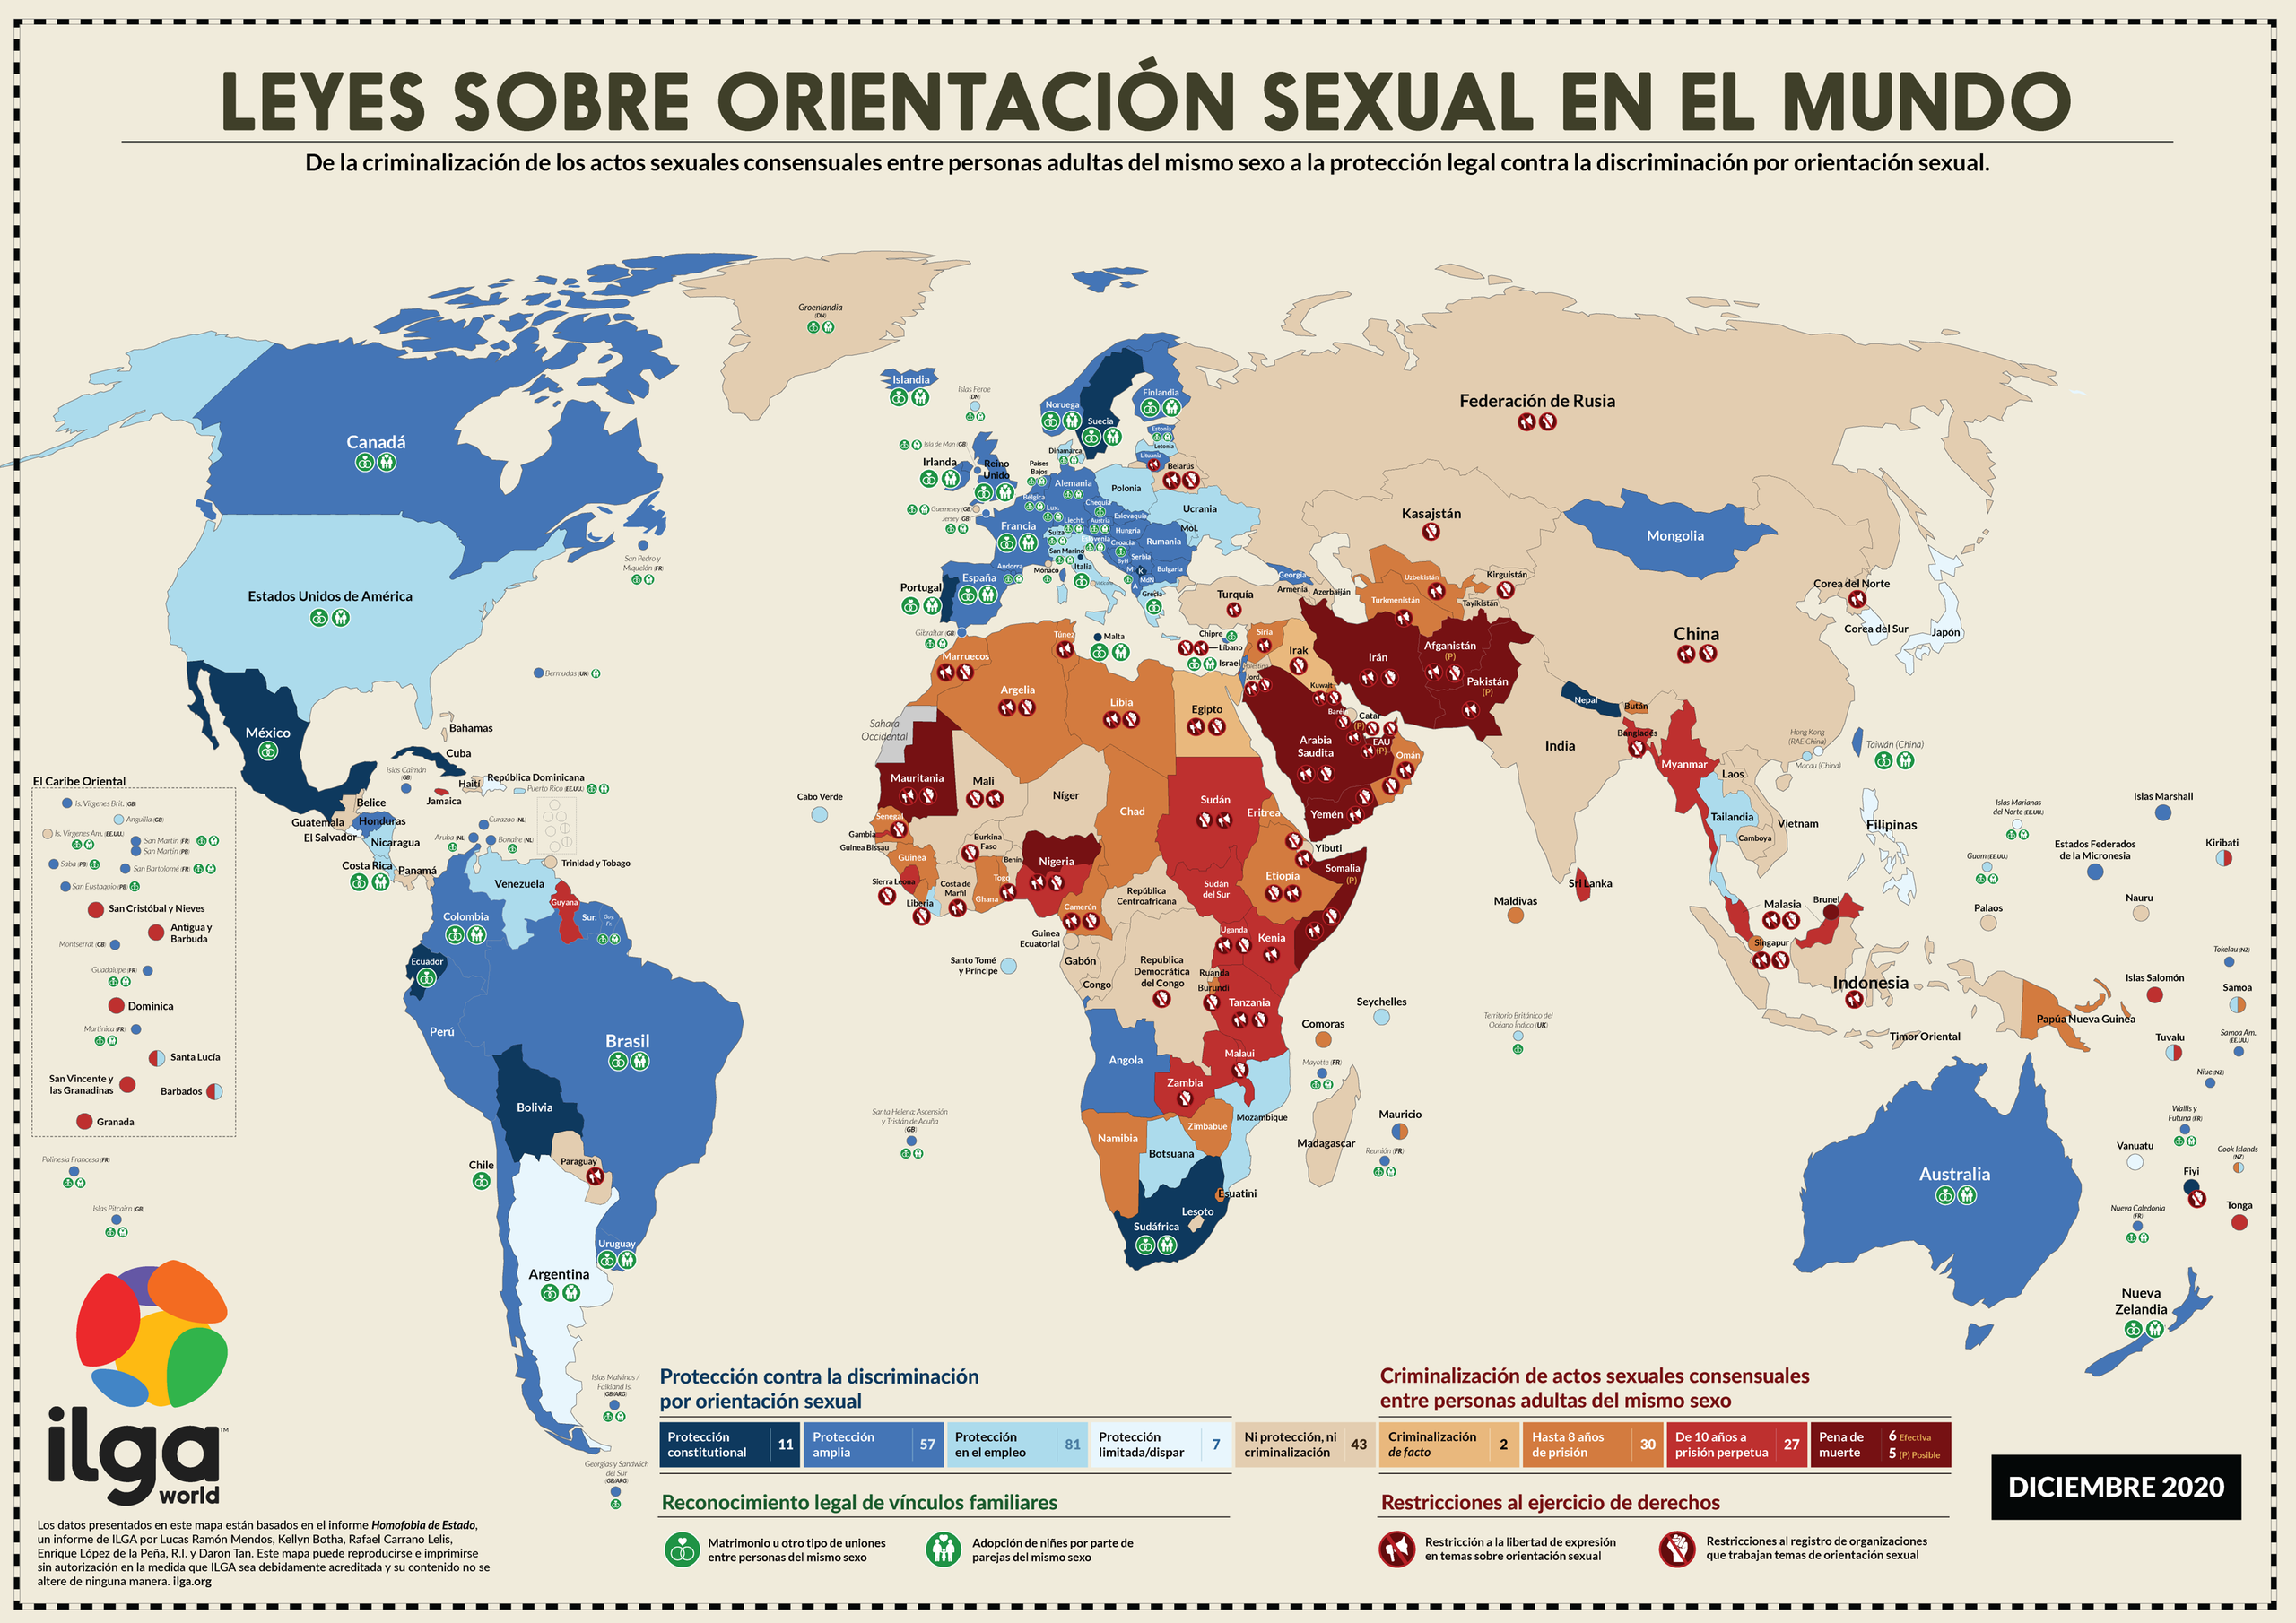 Leyes sobre orientación sexual en el mundo